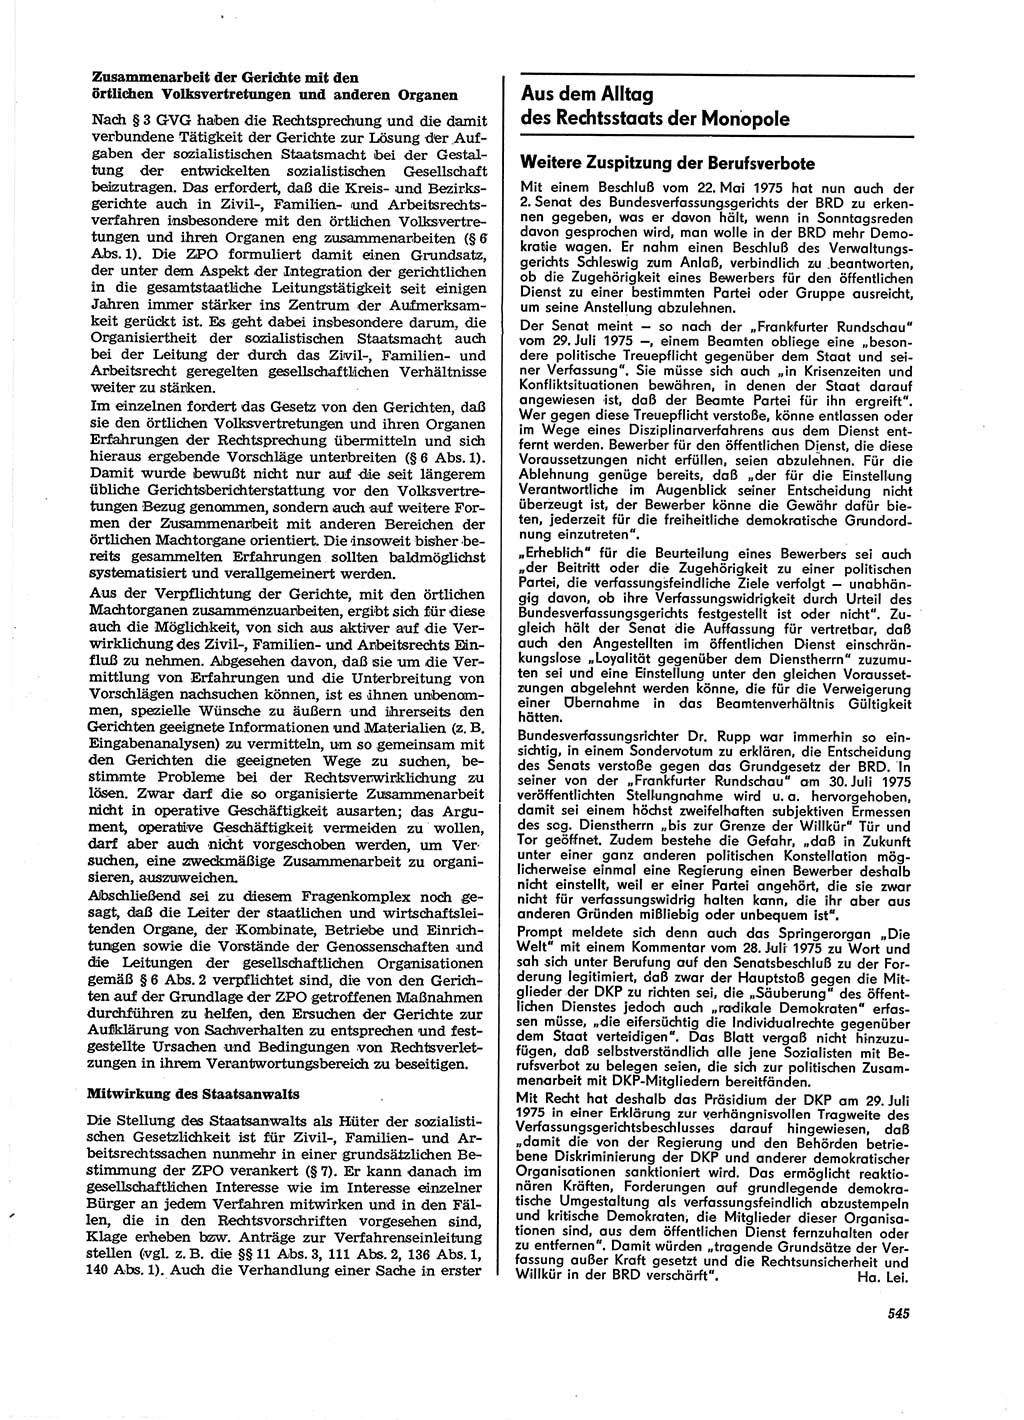 Neue Justiz (NJ), Zeitschrift für Recht und Rechtswissenschaft [Deutsche Demokratische Republik (DDR)], 29. Jahrgang 1975, Seite 545 (NJ DDR 1975, S. 545)